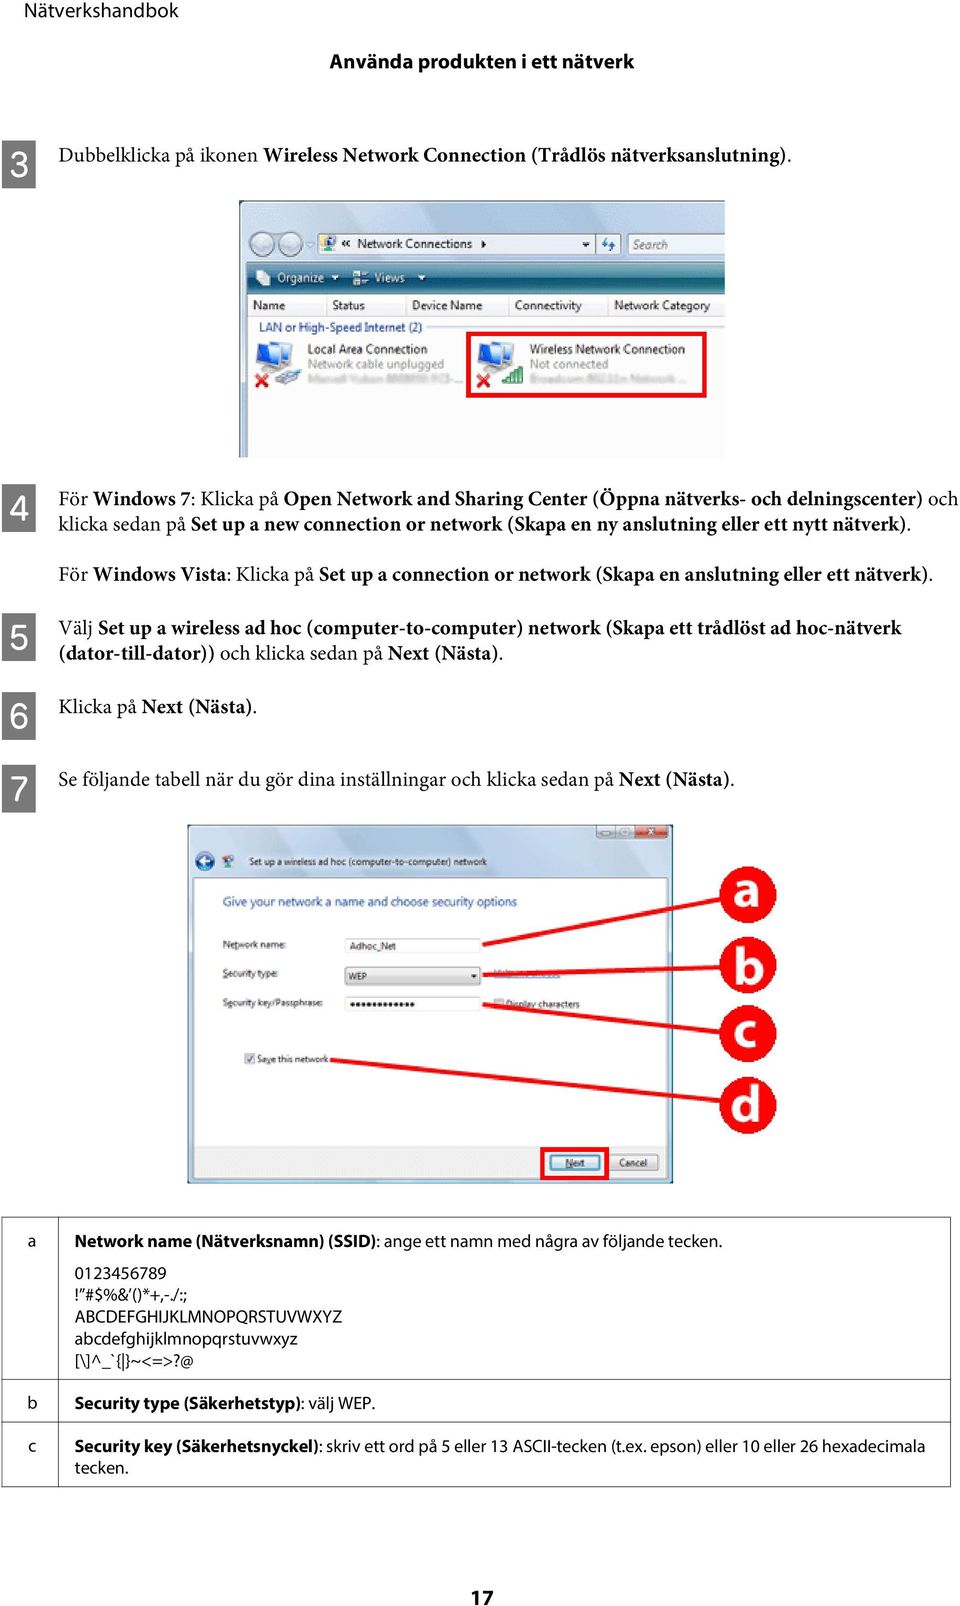 För Windows Vista: Klicka på Set up a connection or network (Skapa en anslutning eller ett nätverk).